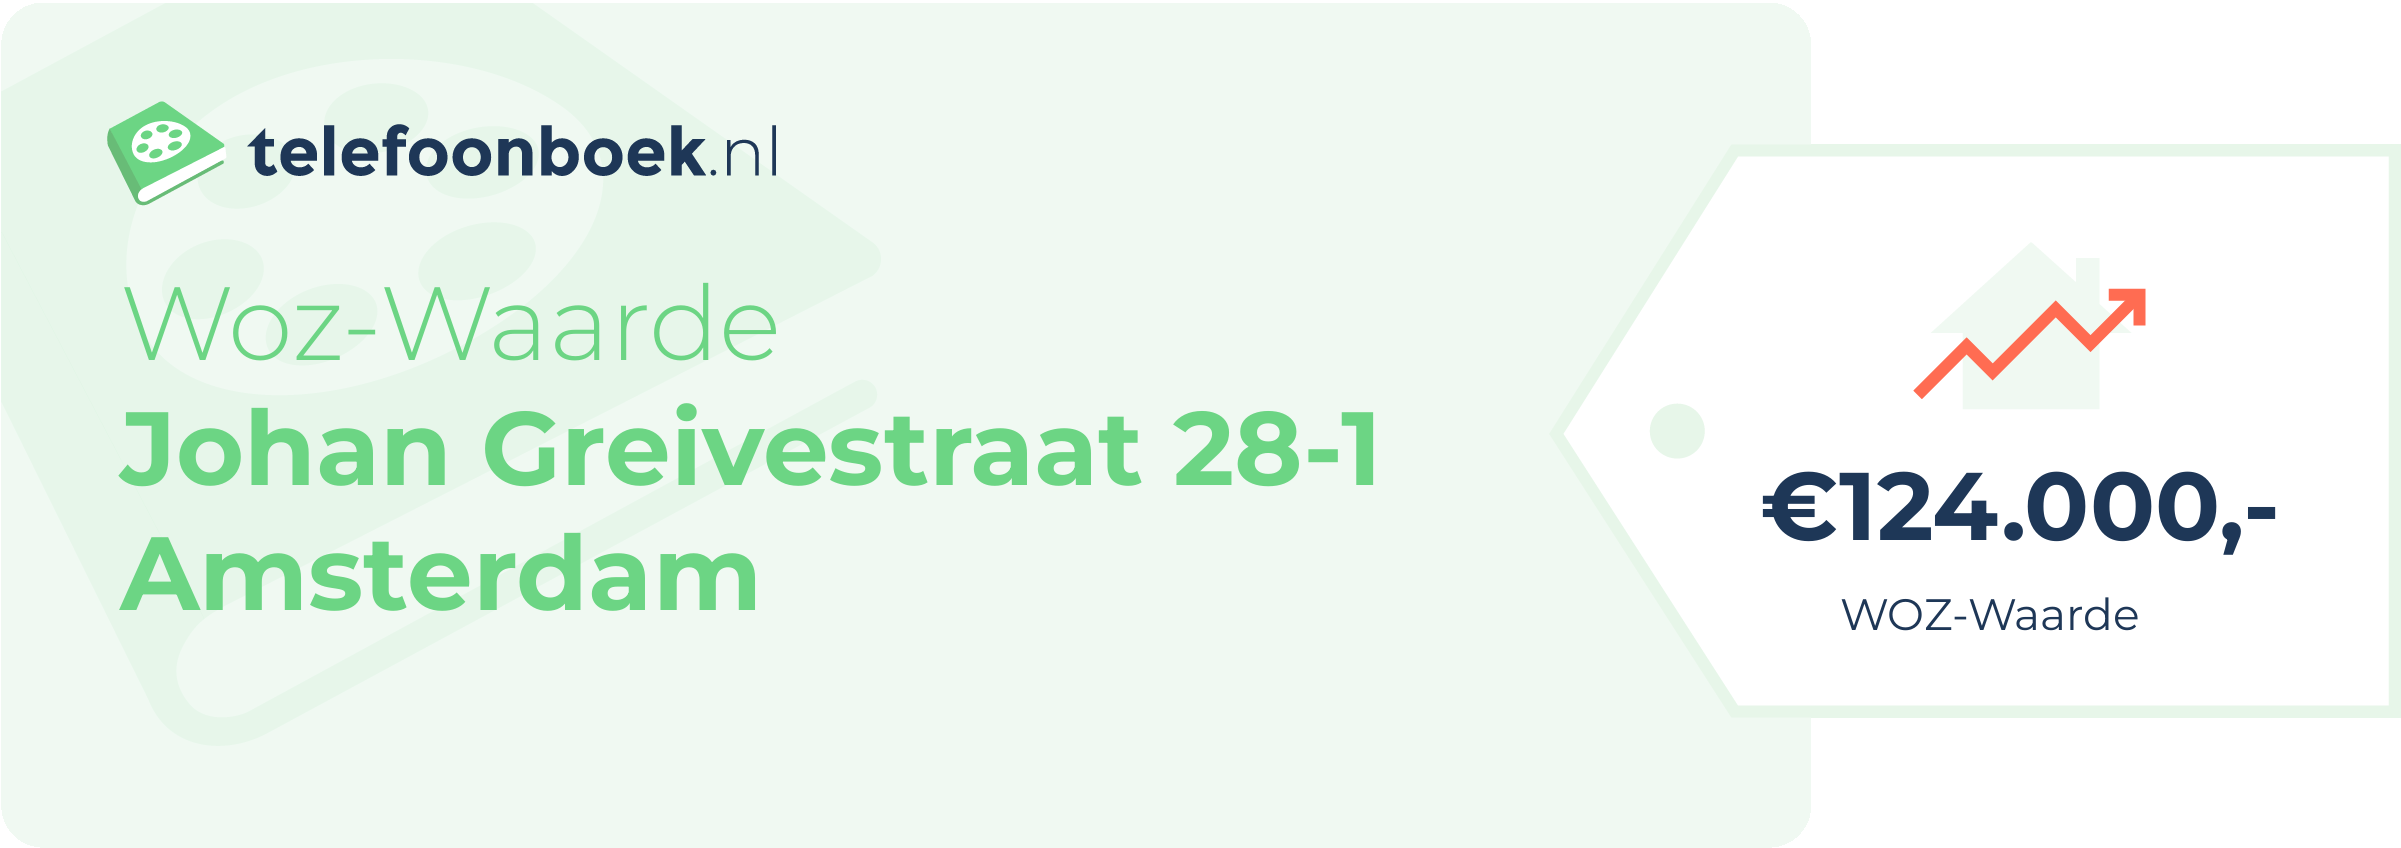 WOZ-waarde Johan Greivestraat 28-1 Amsterdam